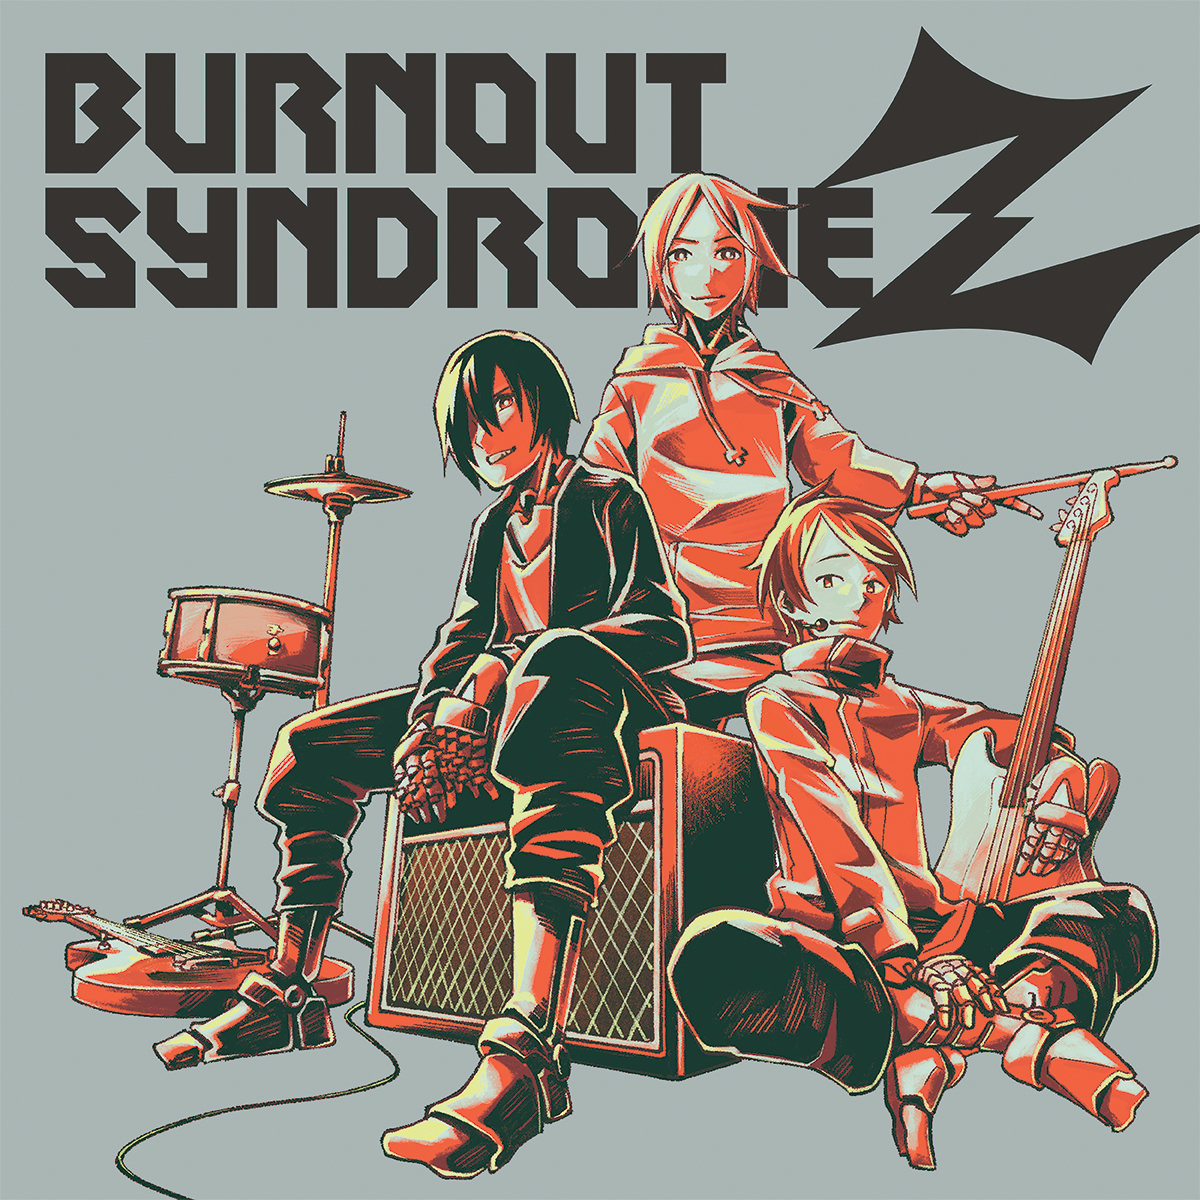 アニメコンセプトbest Burnout Syndromez 3月25日発売 特典情報追加 Burnout Syndromes Official Web Site